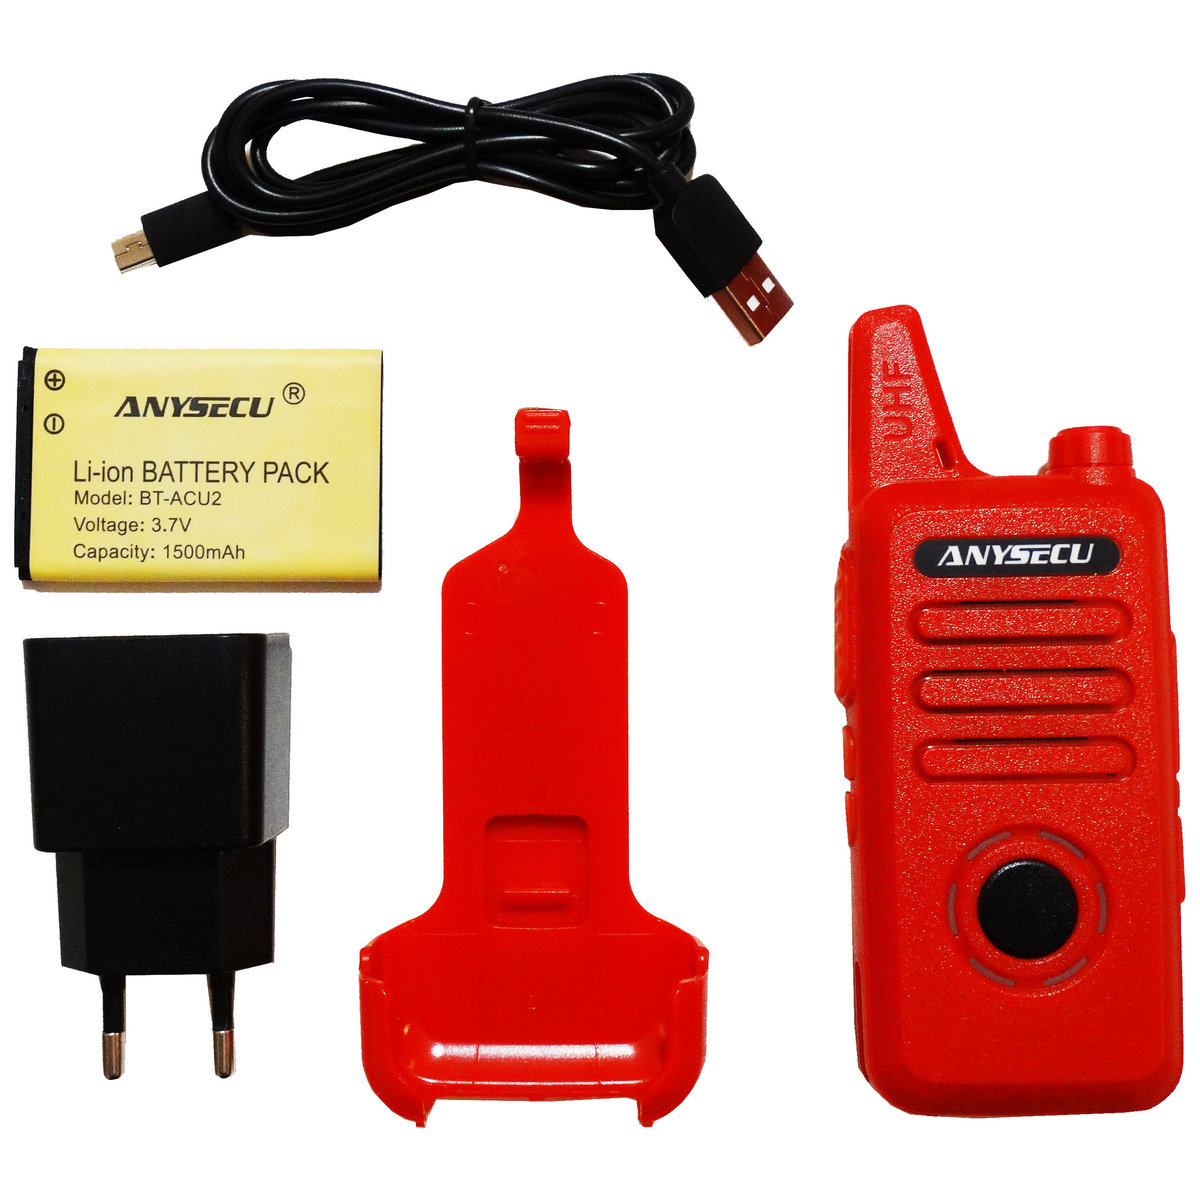 AC-U2 - 16 kanałowy radiotelefon na pasmo UHF o mocy 2W/1W czerwony